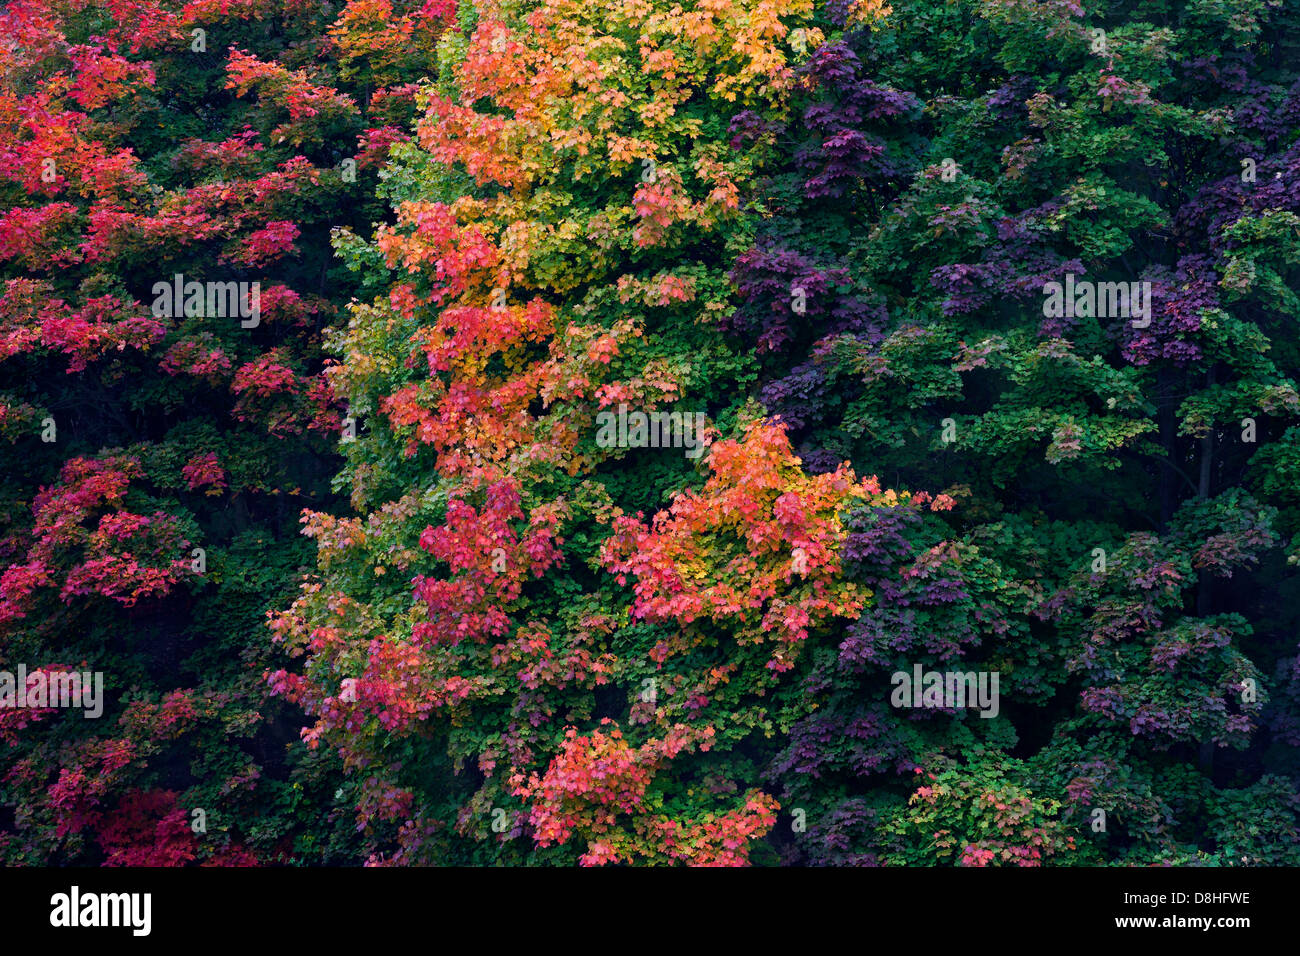 Norwegen-Ahorn (Acer Platanoides), Laub in bunten Herbstfarben Stockfoto